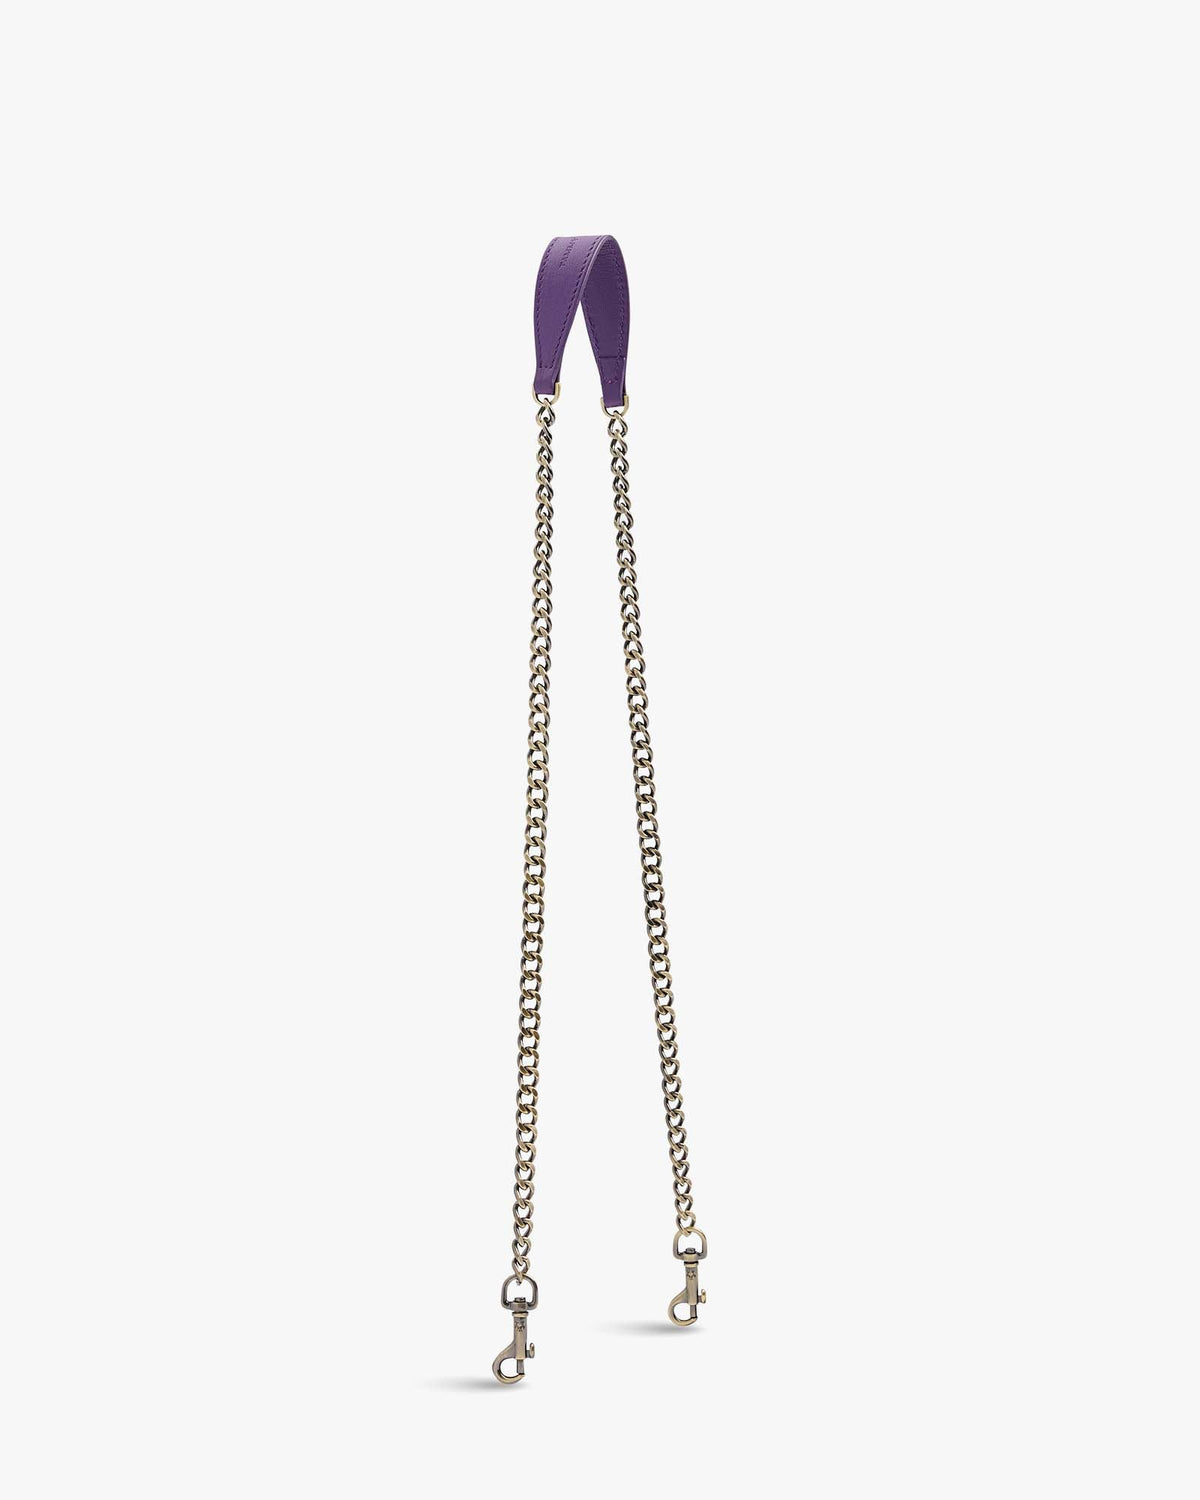 EMMA Chain - Lavender